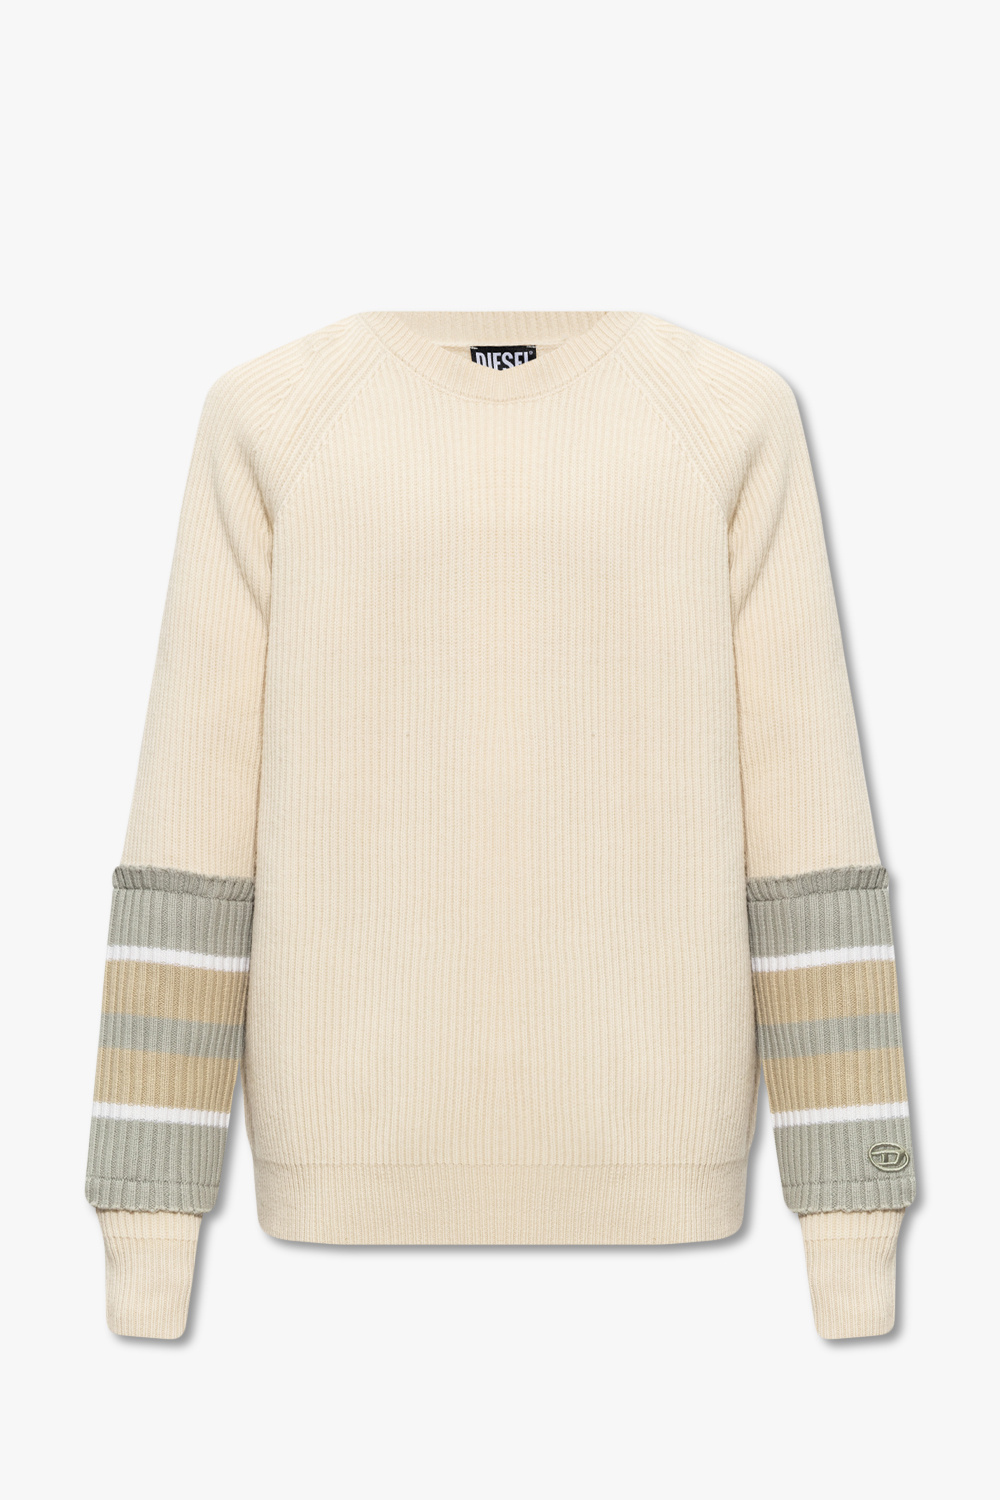 Diesel ‘K-LIFF’ sweater